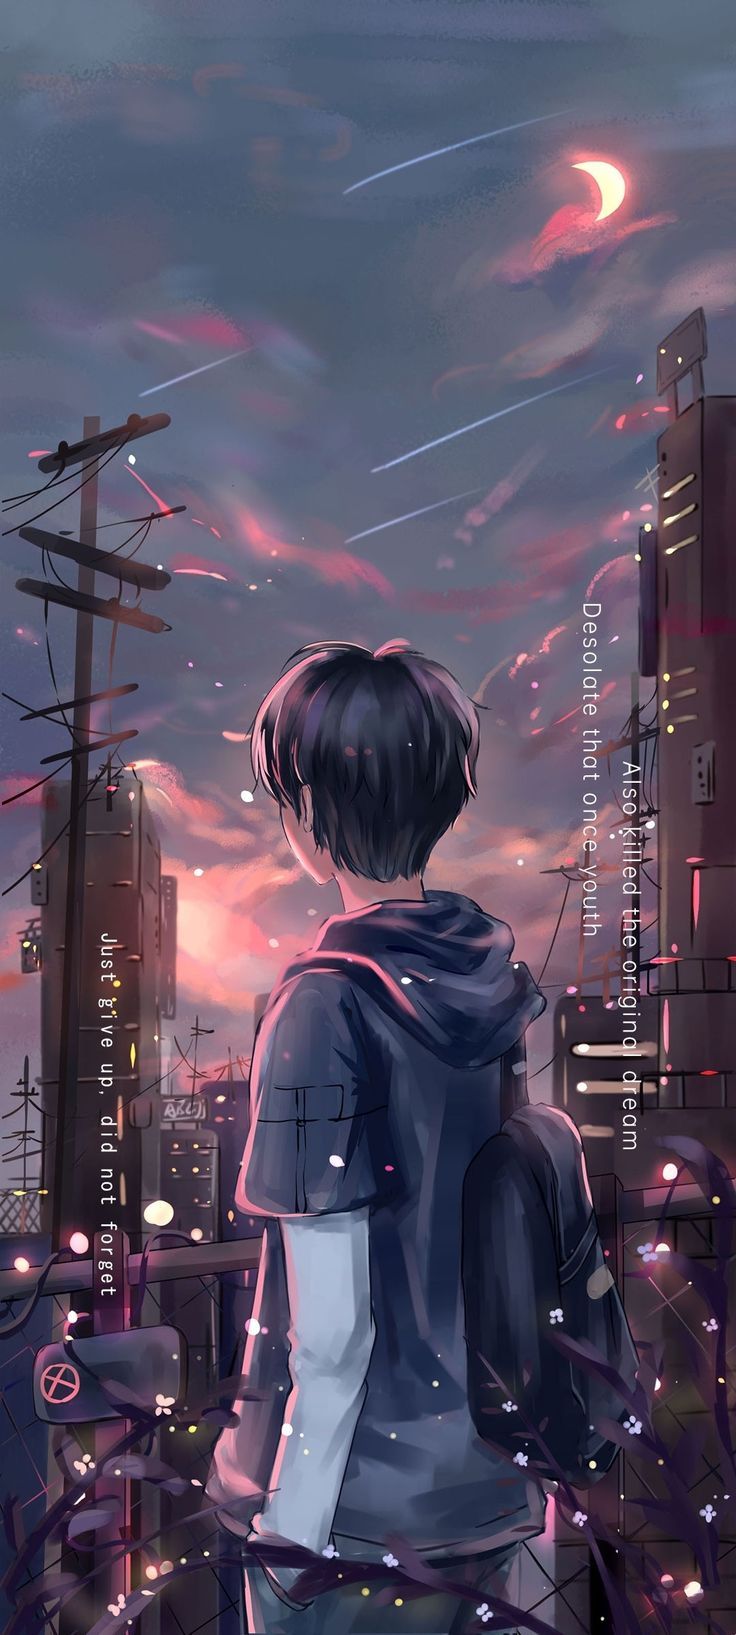 Sad boy là gì Hình nền avatar sad boy anime cực đẹp  TRƯỜNG THPT BÌNH  THANH